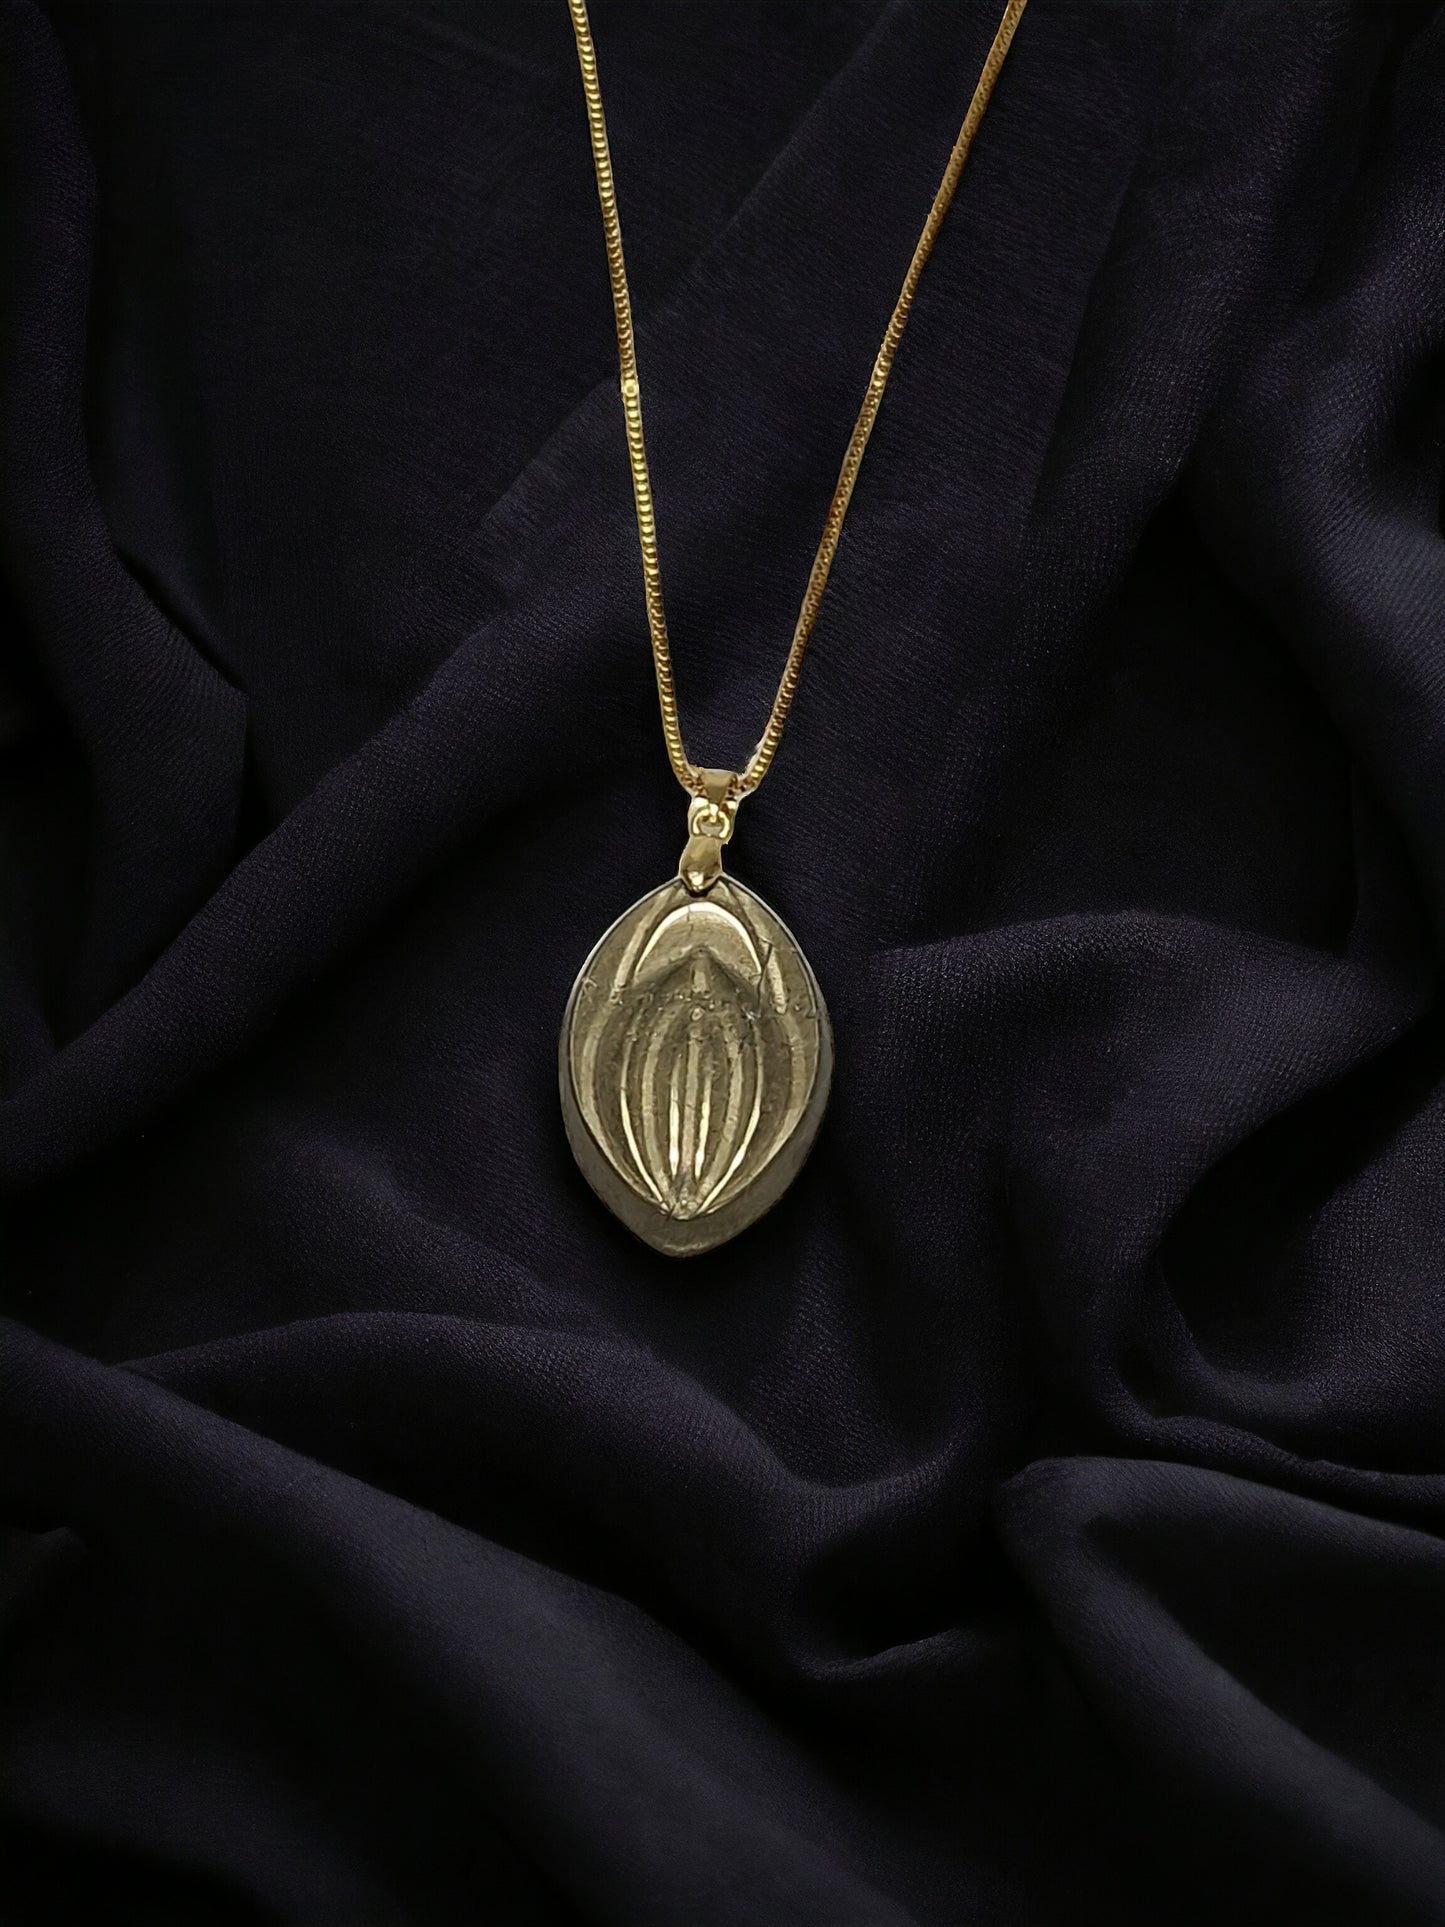 Eine wunderschöne Halskette mit einem Kristall des Steins Pyrit, geformt wie eine Vagina oder Fifi